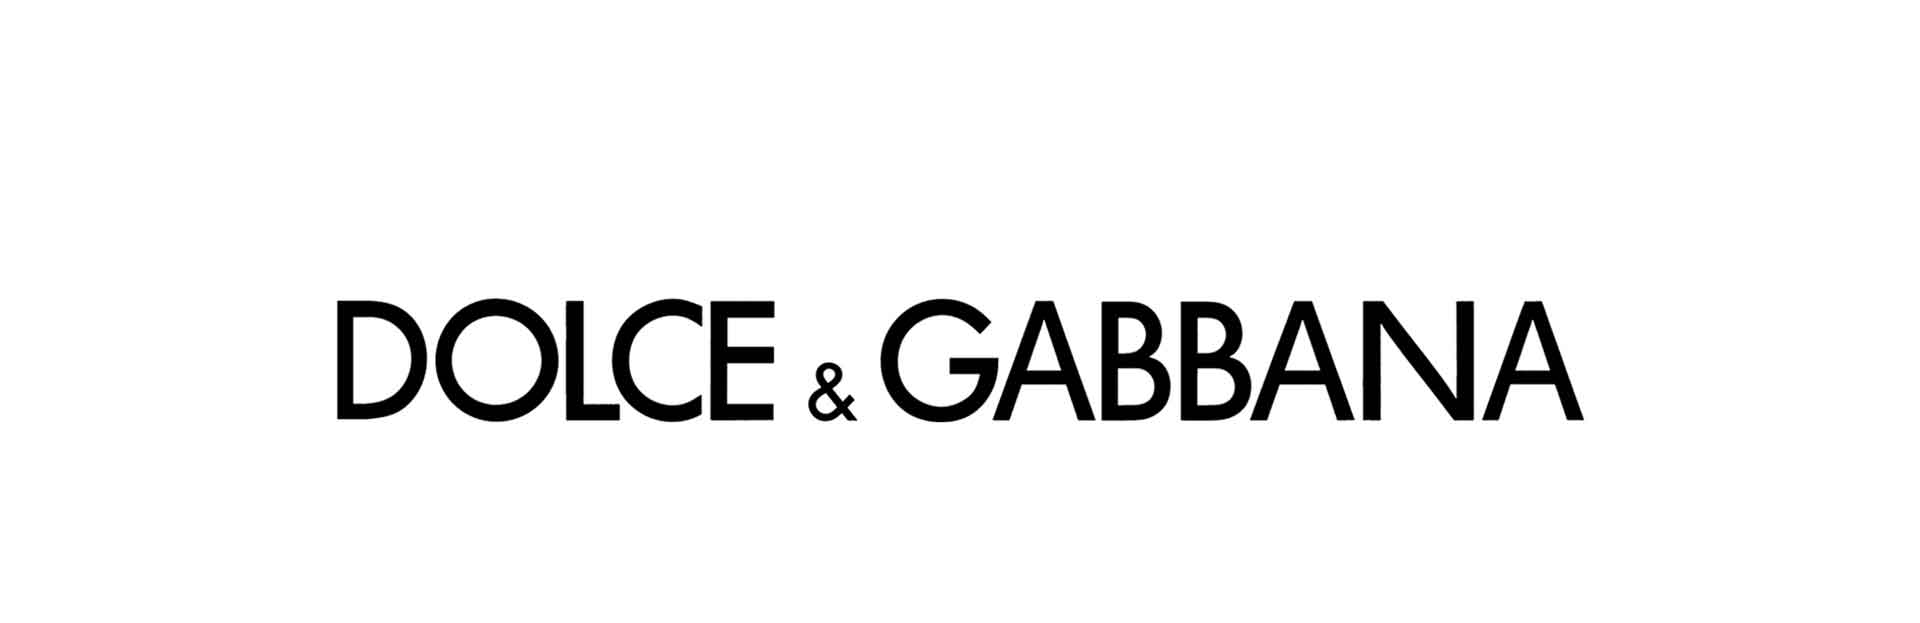 Дольче габбана слова. Дольче Габбана логотип. Dolce Gabbana обувь лого. Фирменный знак Дольче Габбана. Дольче Габбана мужской Парфюм новинка.